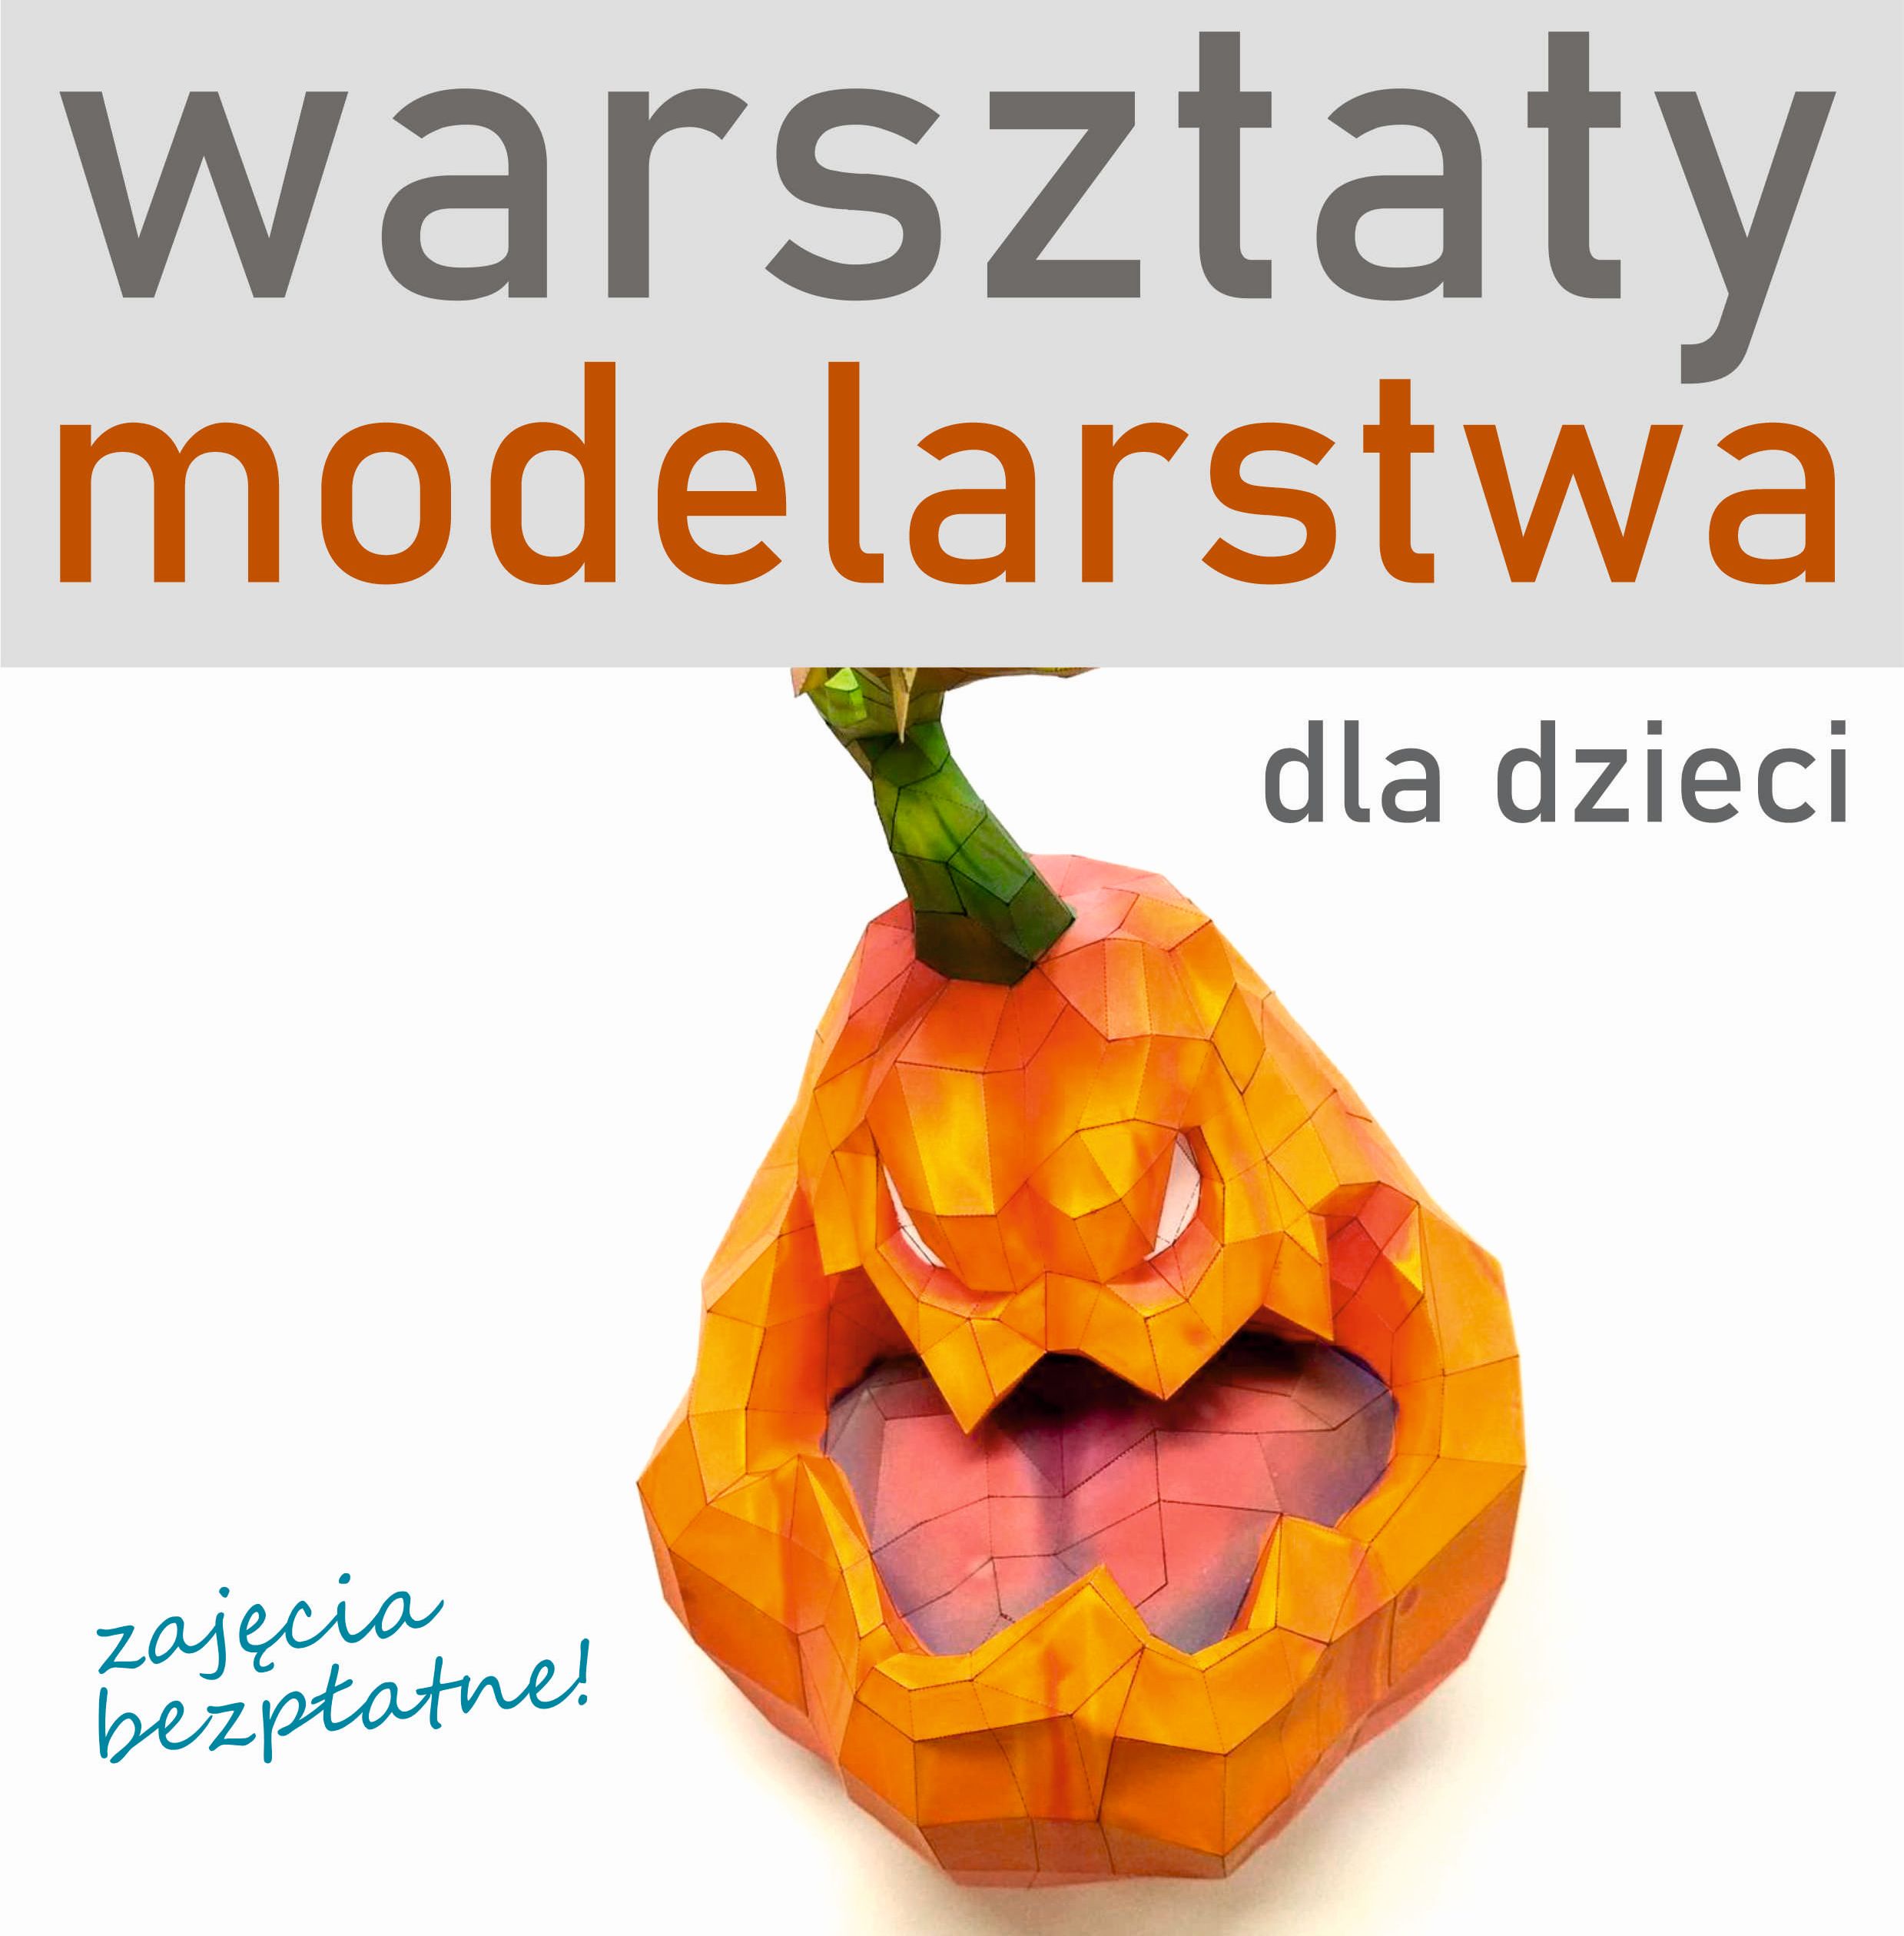 WARSZTATY MODELARSTWA DLA DZIECI – 22 Października 2022, Godz. 10.00